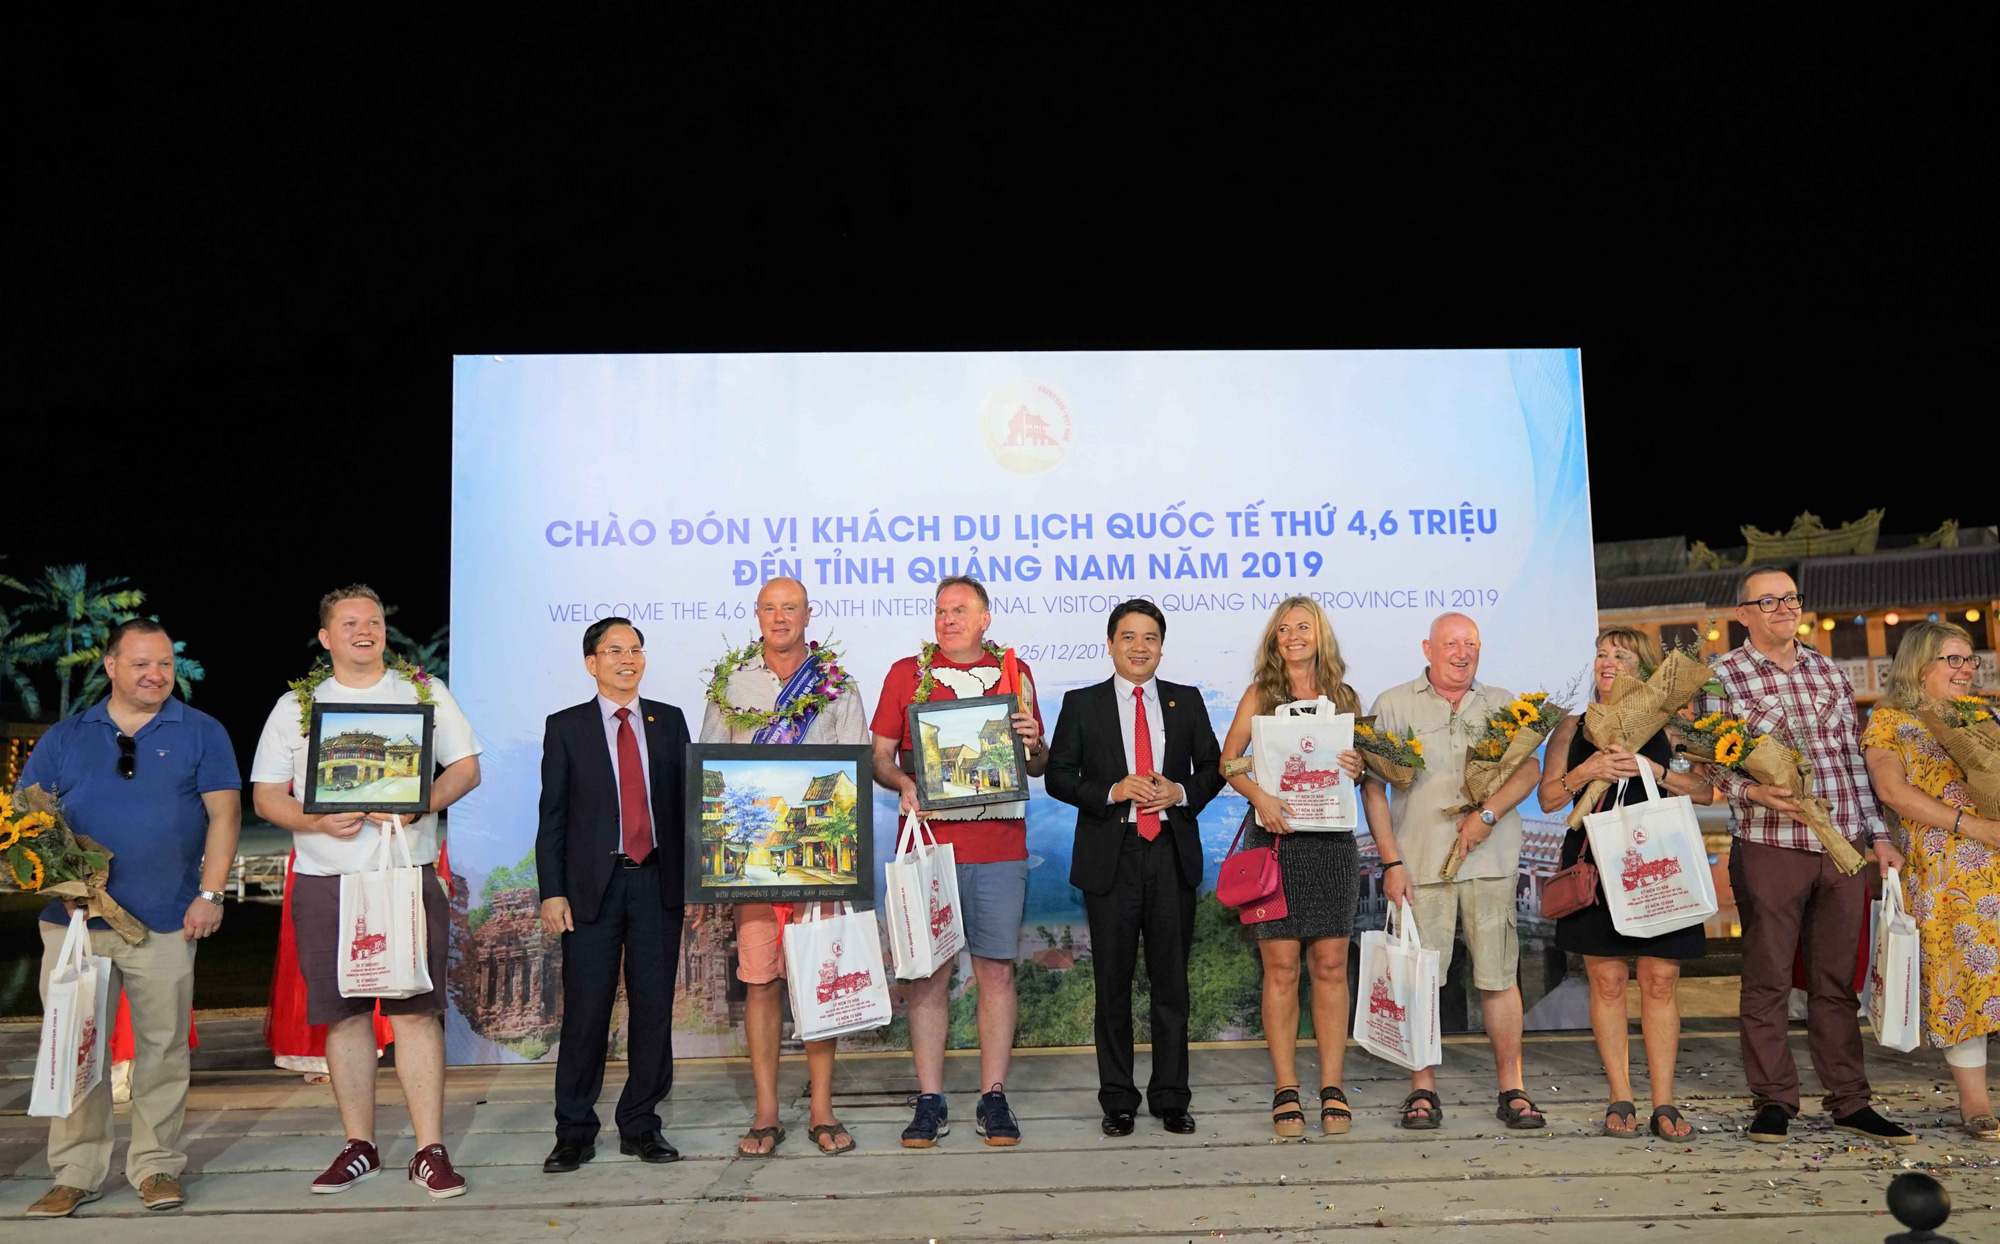 Chào đón vị khách du lịch quốc tế thứ 4,6 triệu tới Quảng Nam năm 2019 - Ảnh 3.